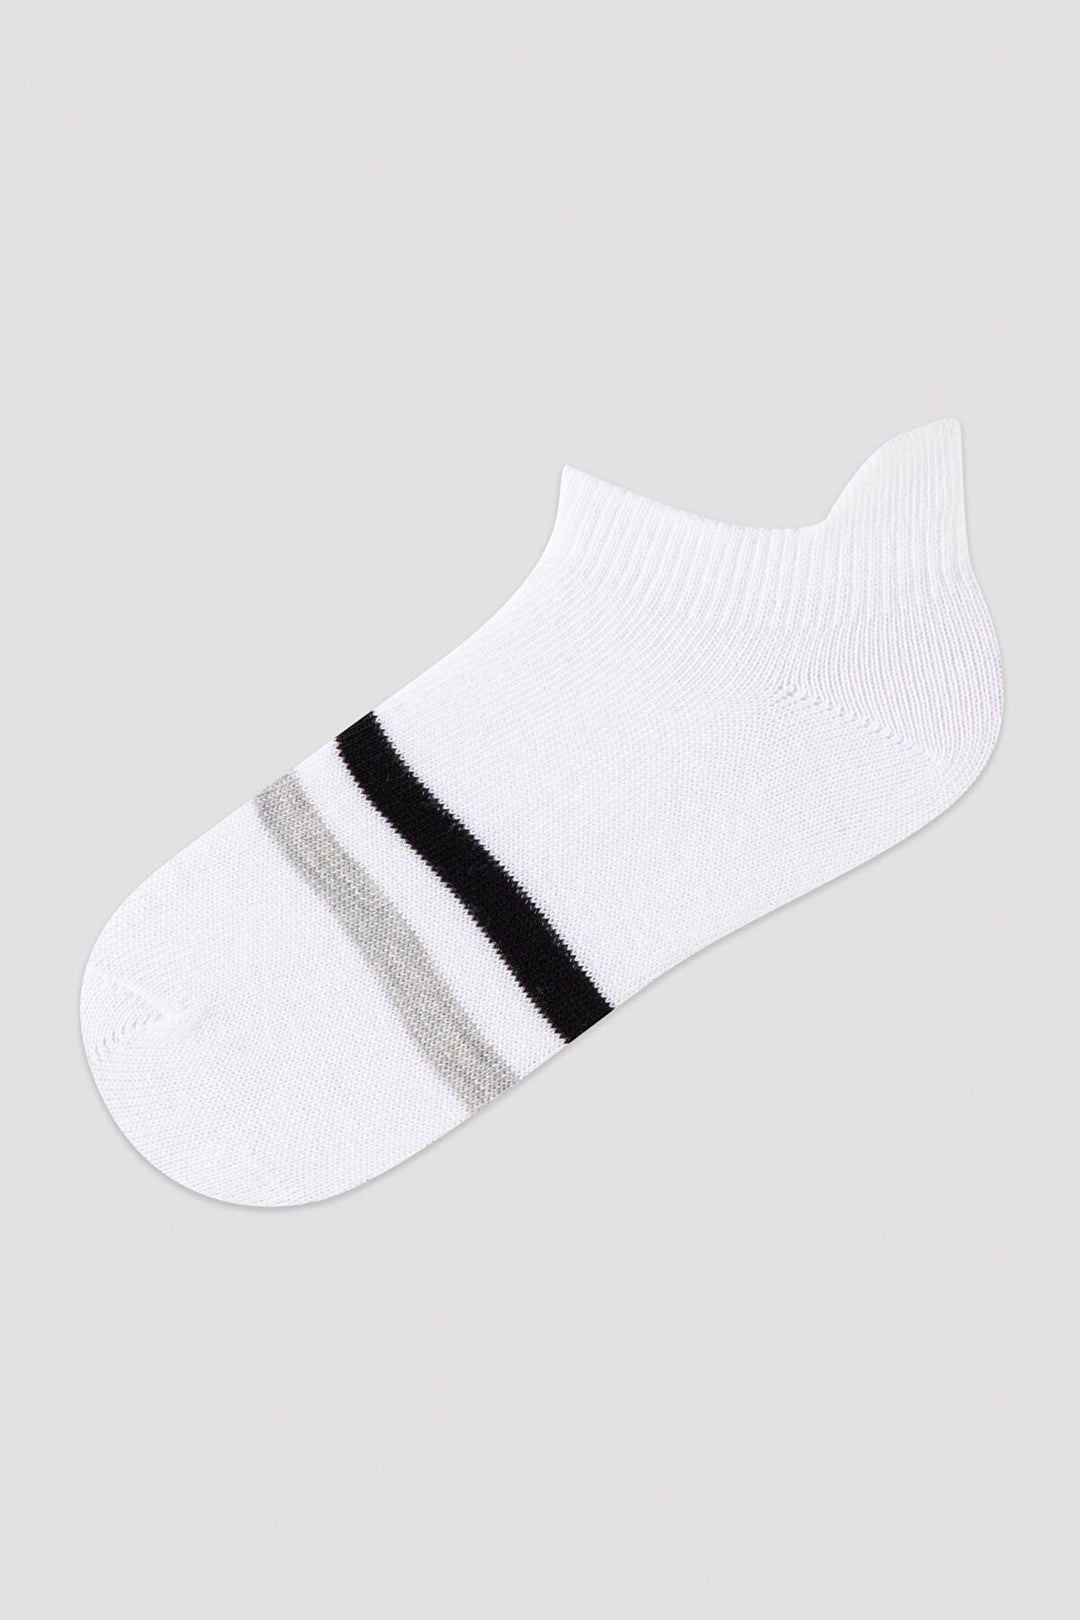 Boys White Black Stripe 2in1 Liner Socks